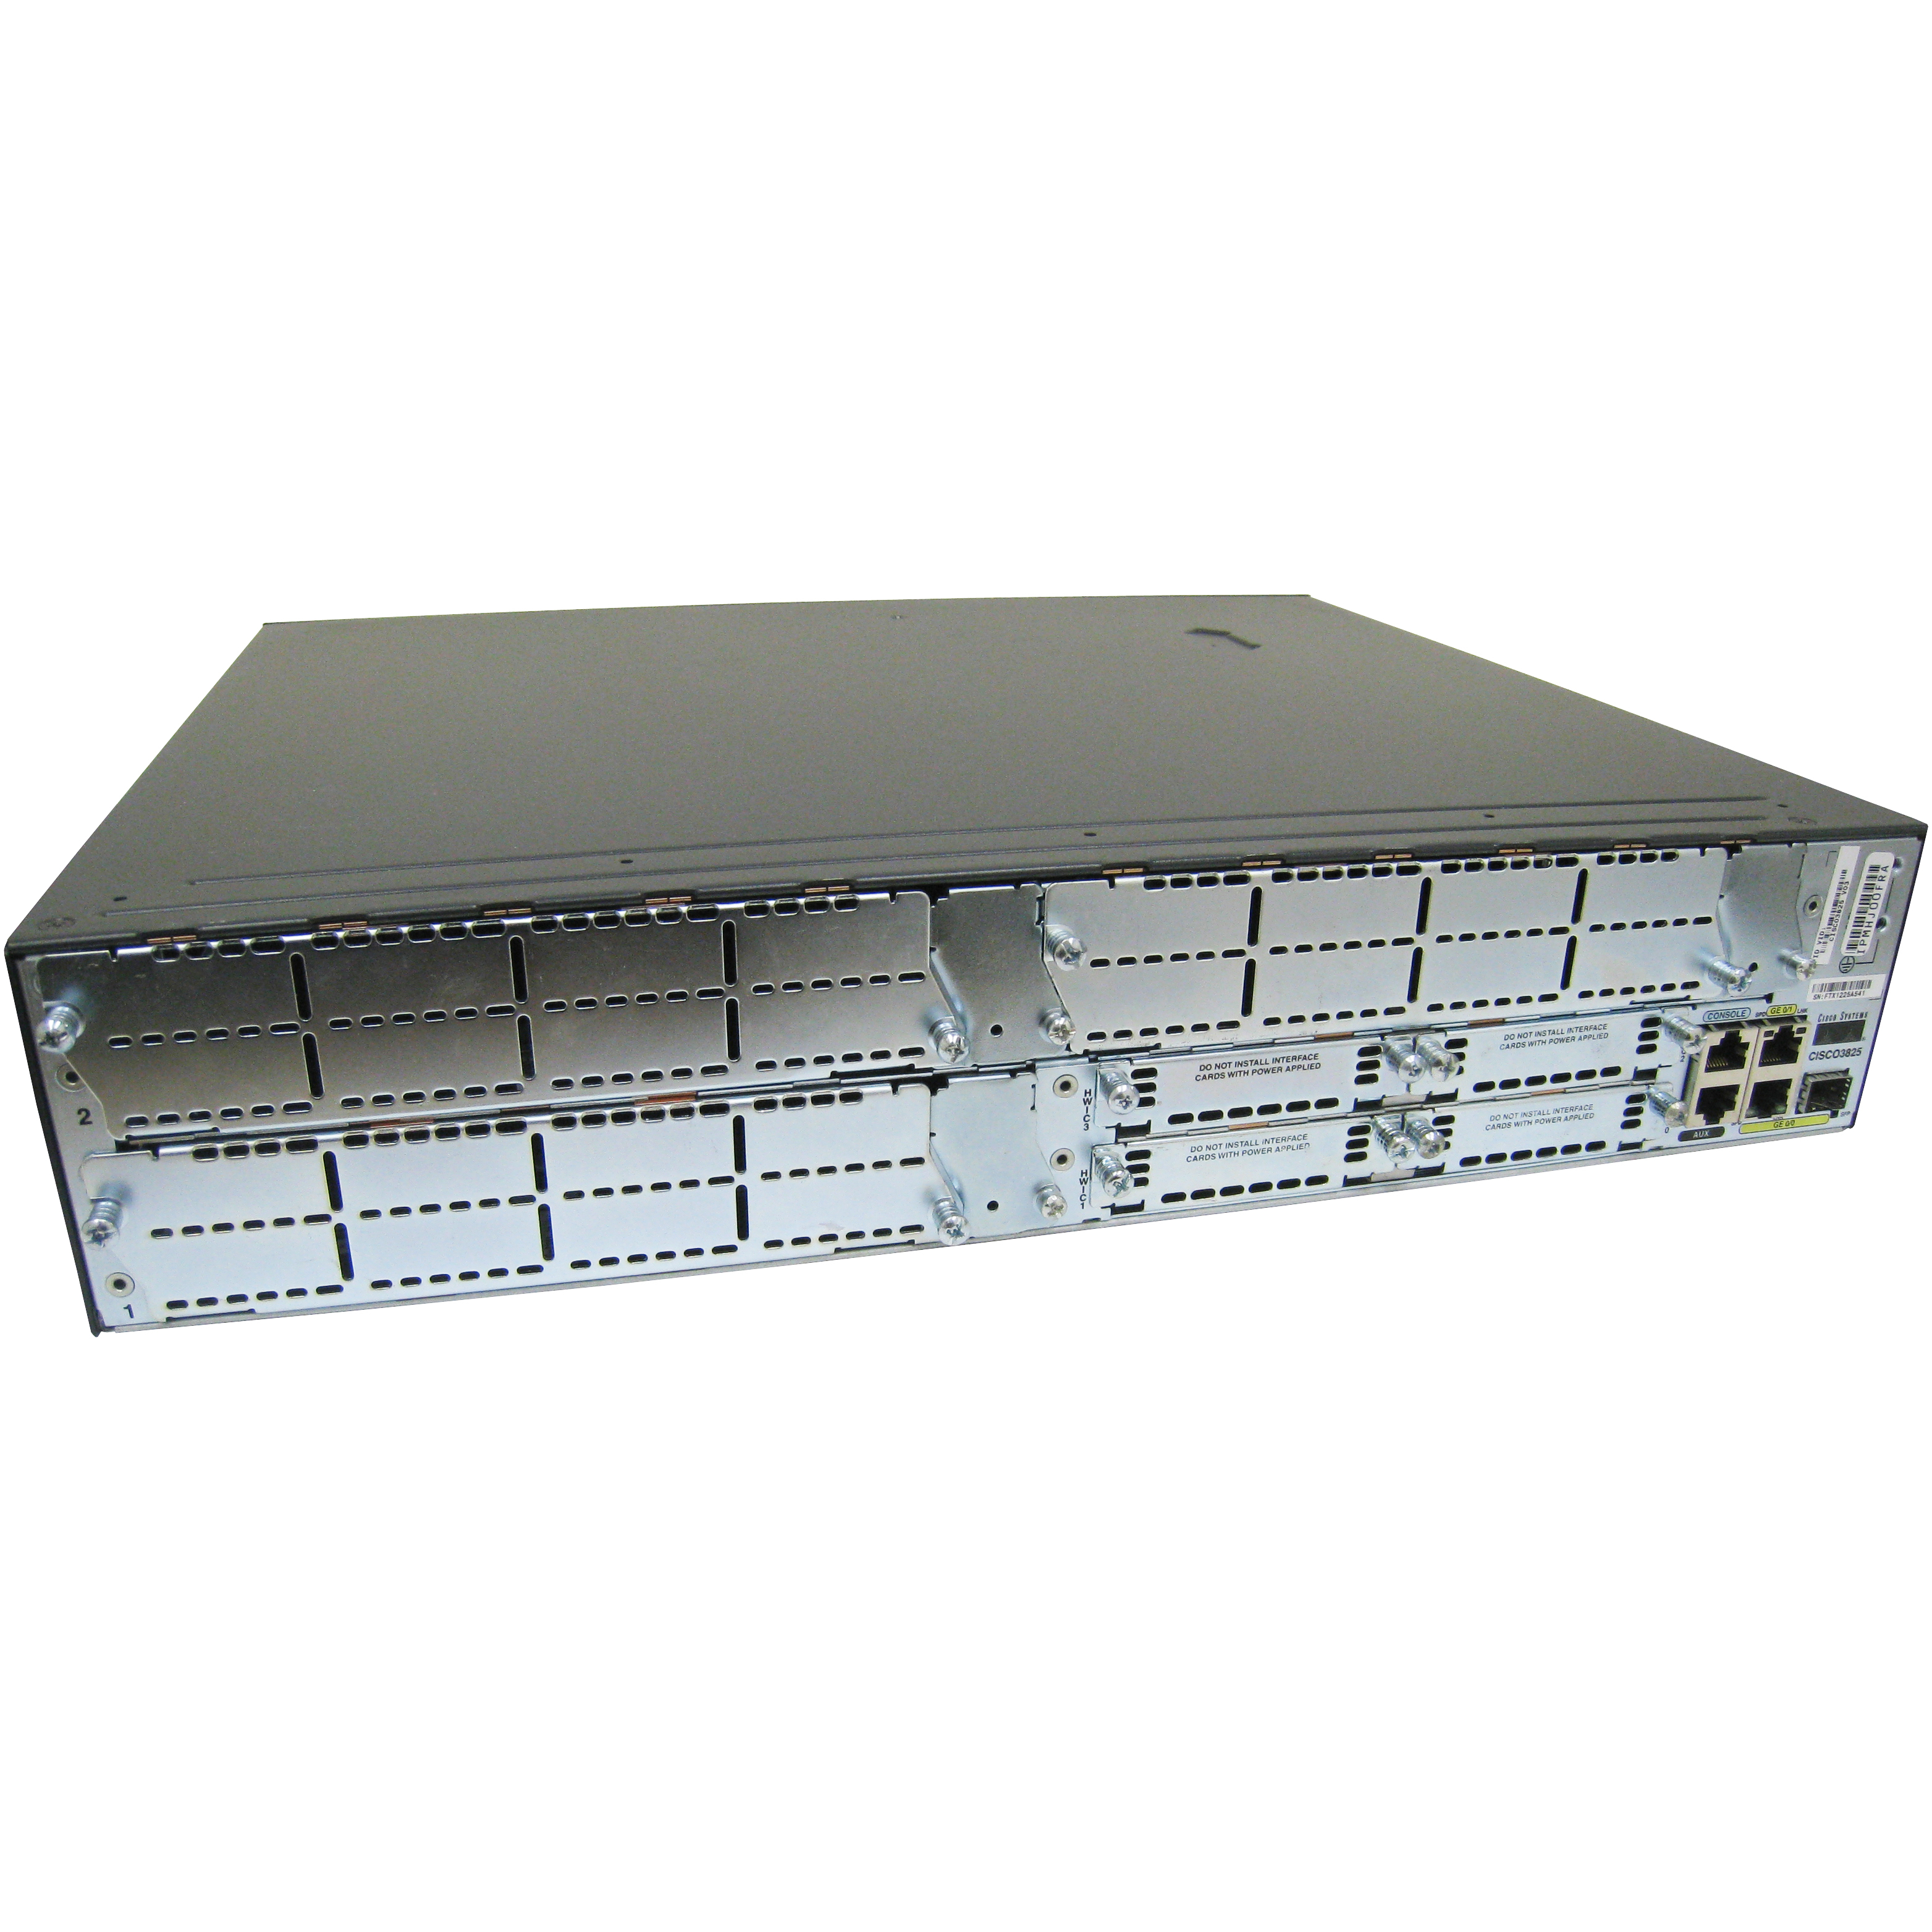 Cisco CISCO3825-VMSS/K9